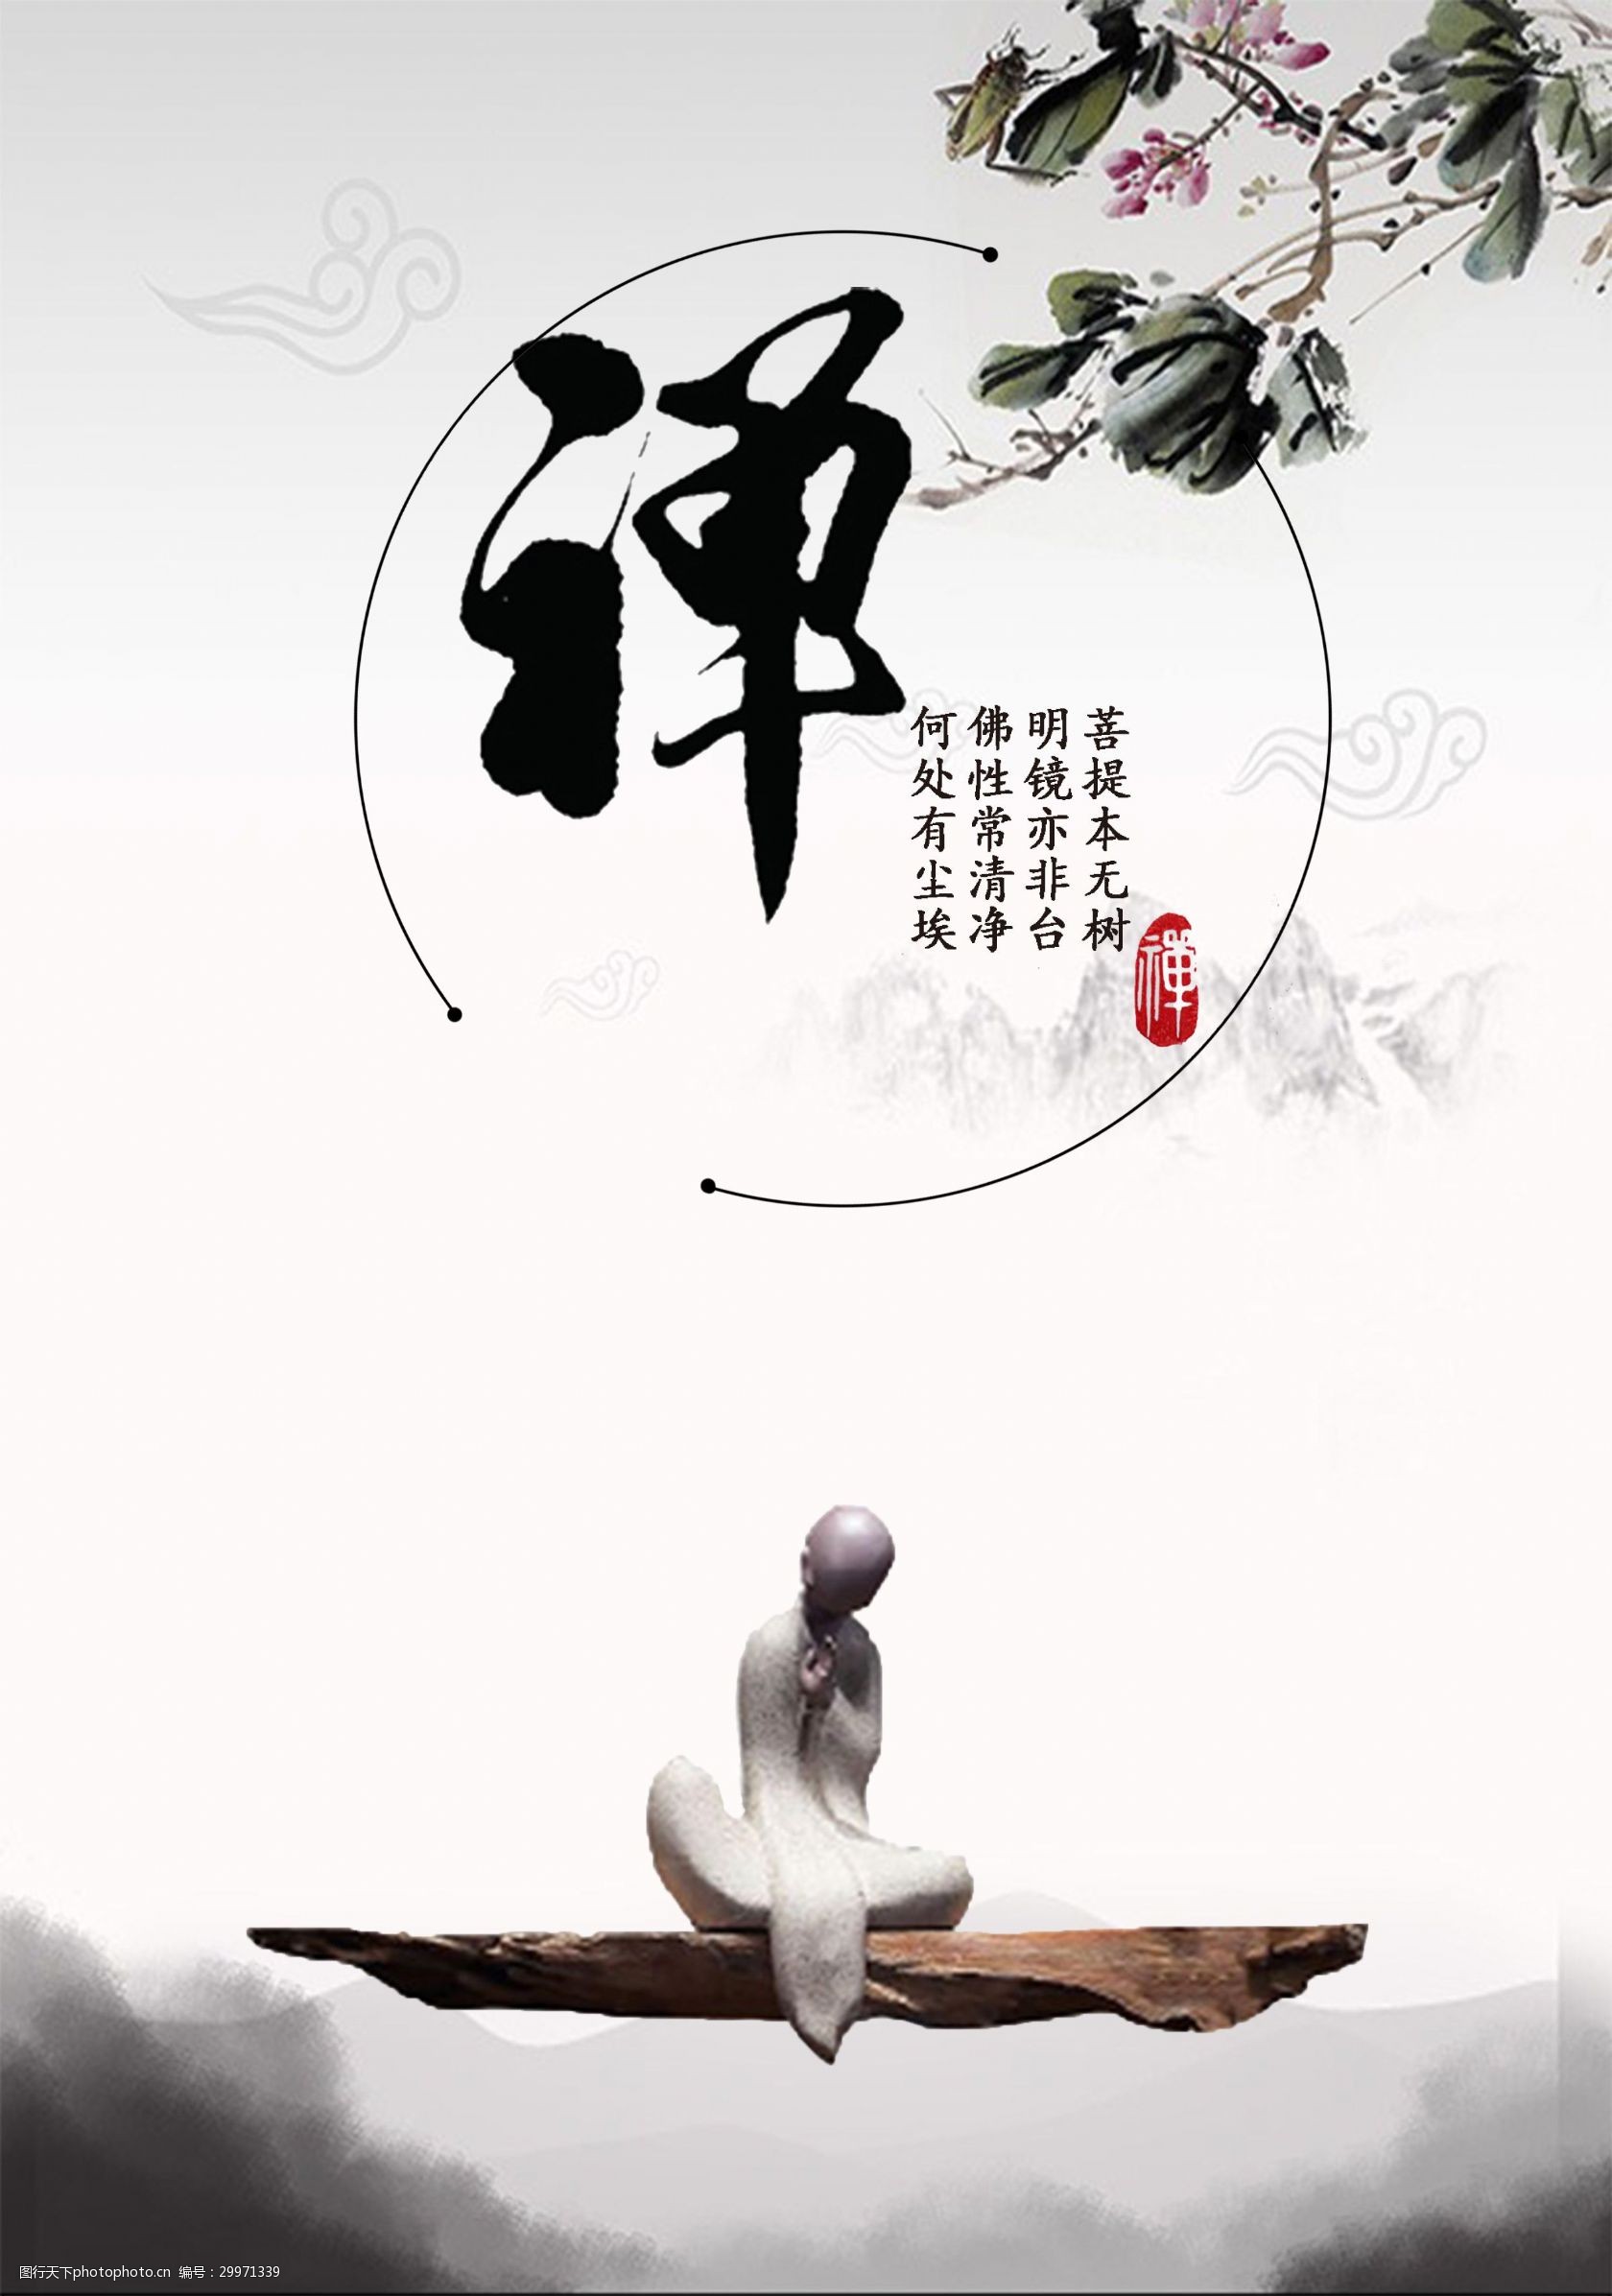 关键词:中国山水风禅意海报 中国风 禅意 传统文化 佛学 修身养性